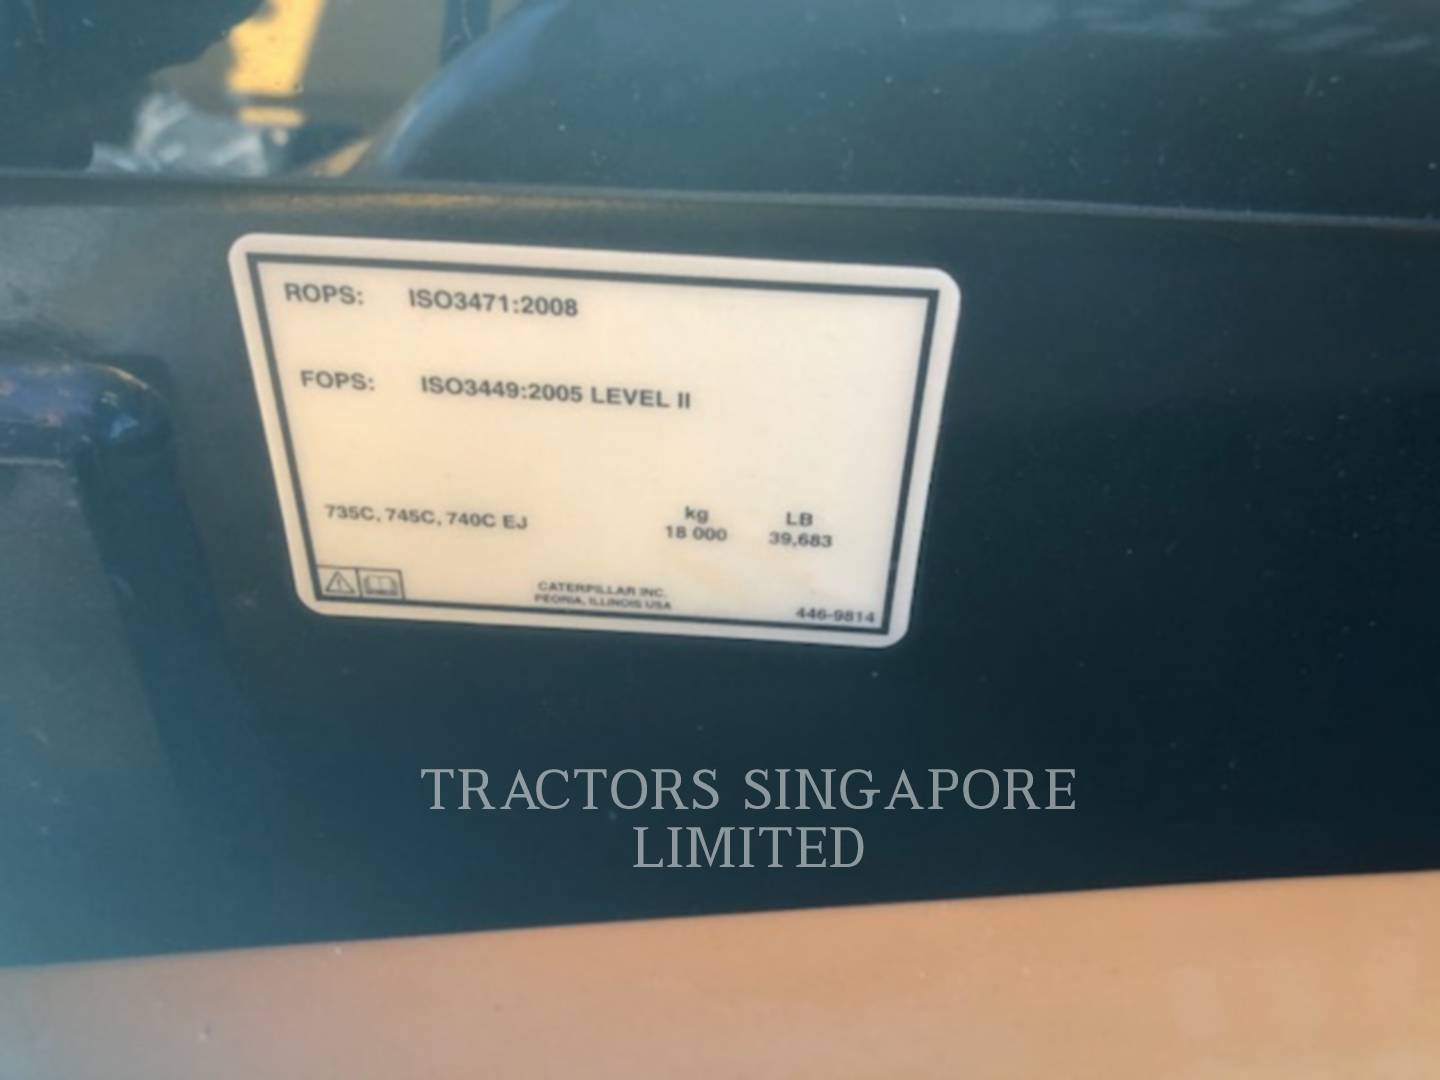 wtk?JHNyYz1hZGY0ZWJkNmIzOTU2MTg0YTFjM2YxNzdjZDZhZmIxMiYkdHh0PVRSQUNUT1JTJTIwU0lOR0FQT1JFJTIwTElNSVRFRCY5ODQ0 745C | Tractors Singapore